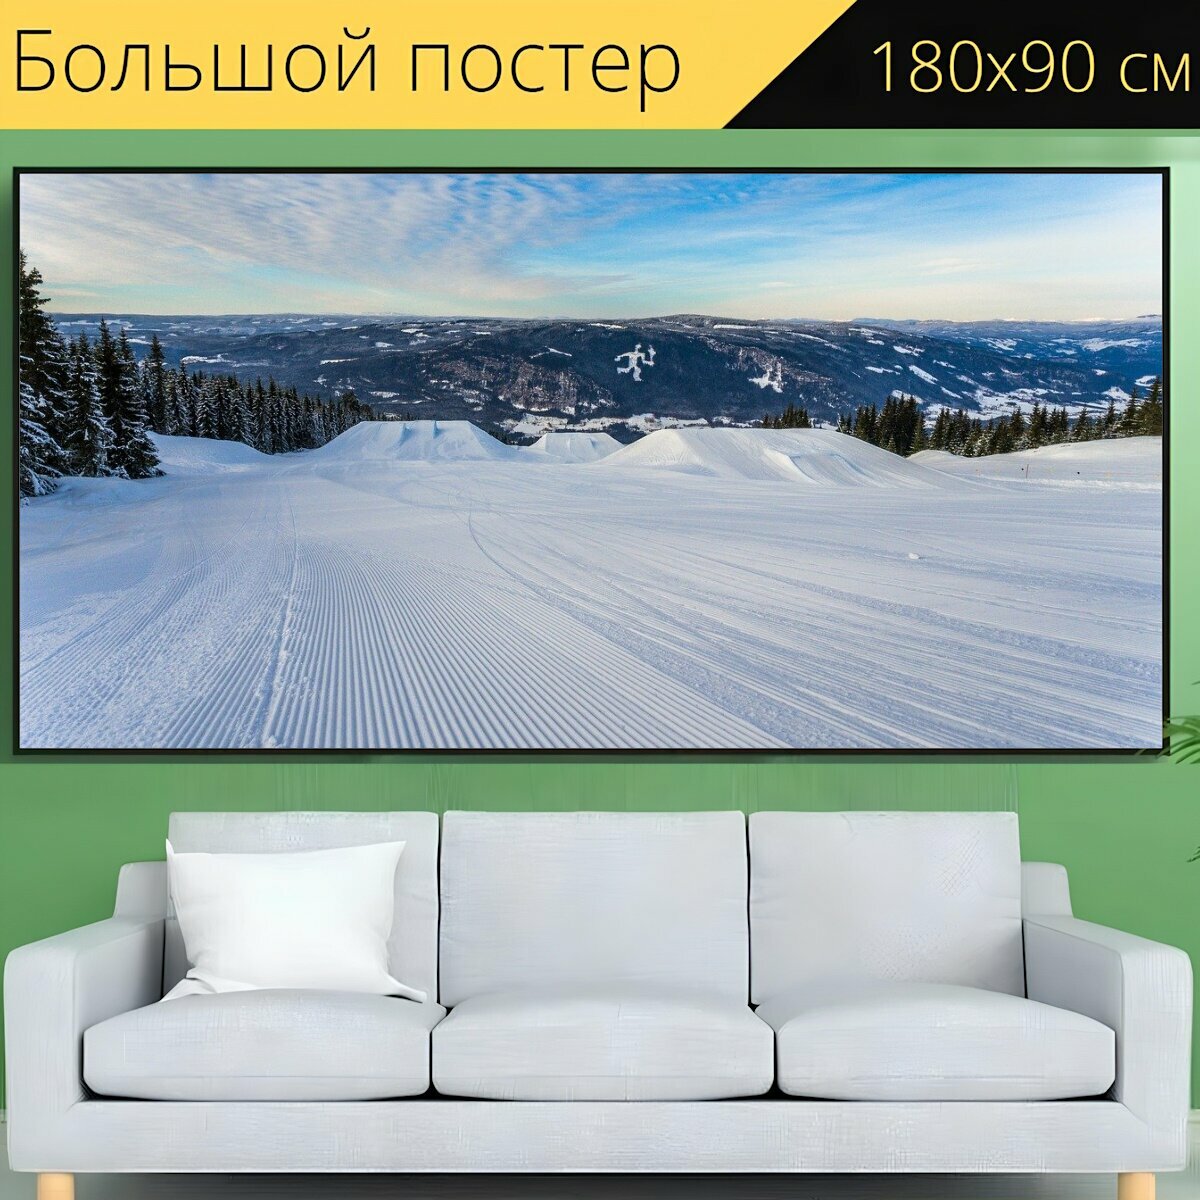 Большой постер "Горные лыжи, холодный, склоны" 180 x 90 см. для интерьера